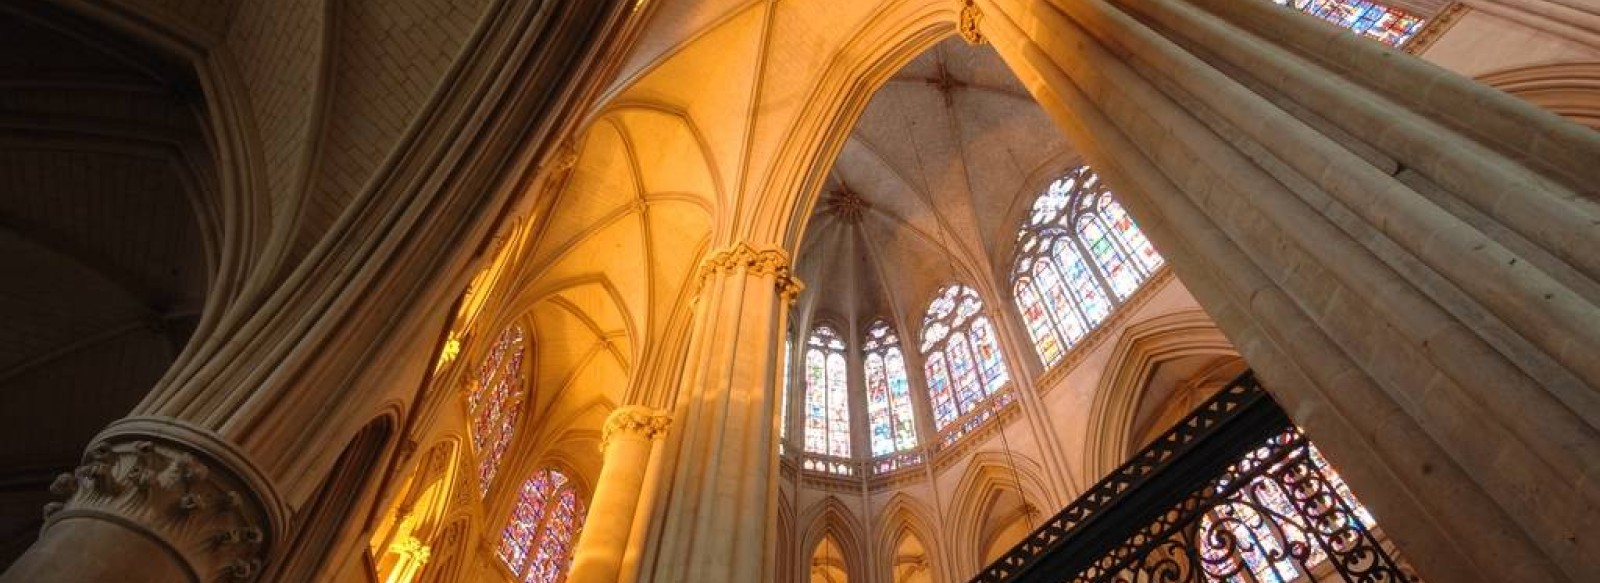 Cathedrale Saint-Julien - Le Mans